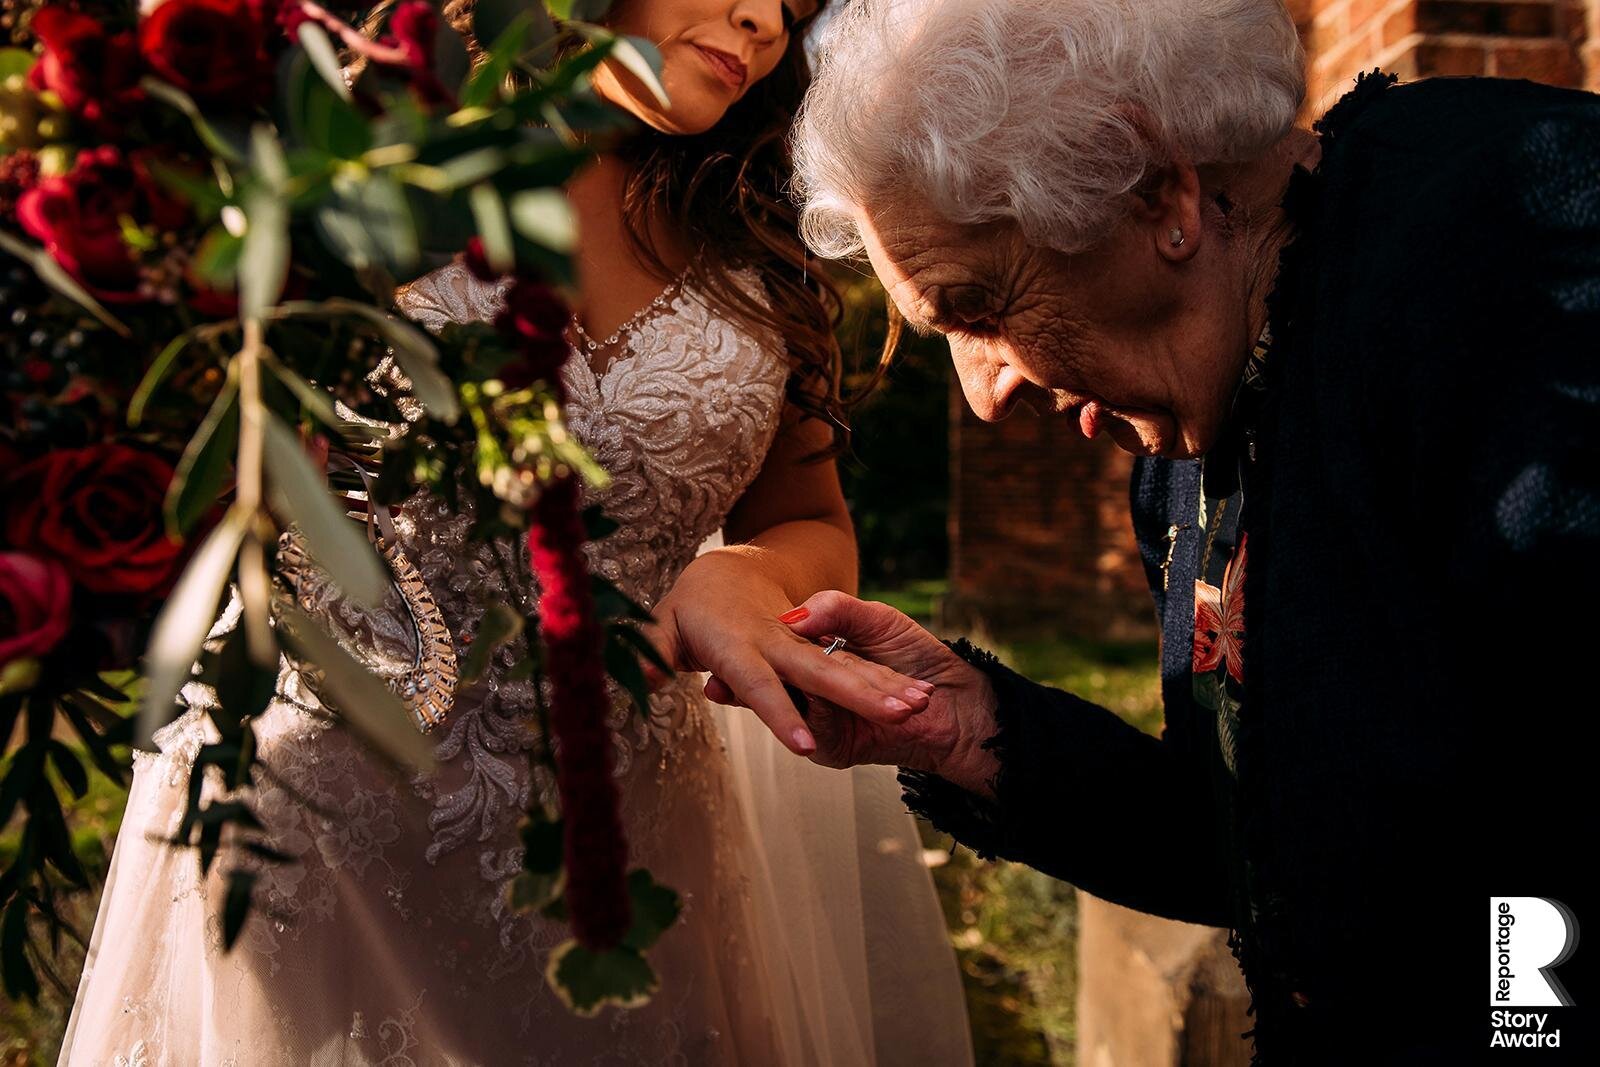  Brides nan studies her wedding ring 